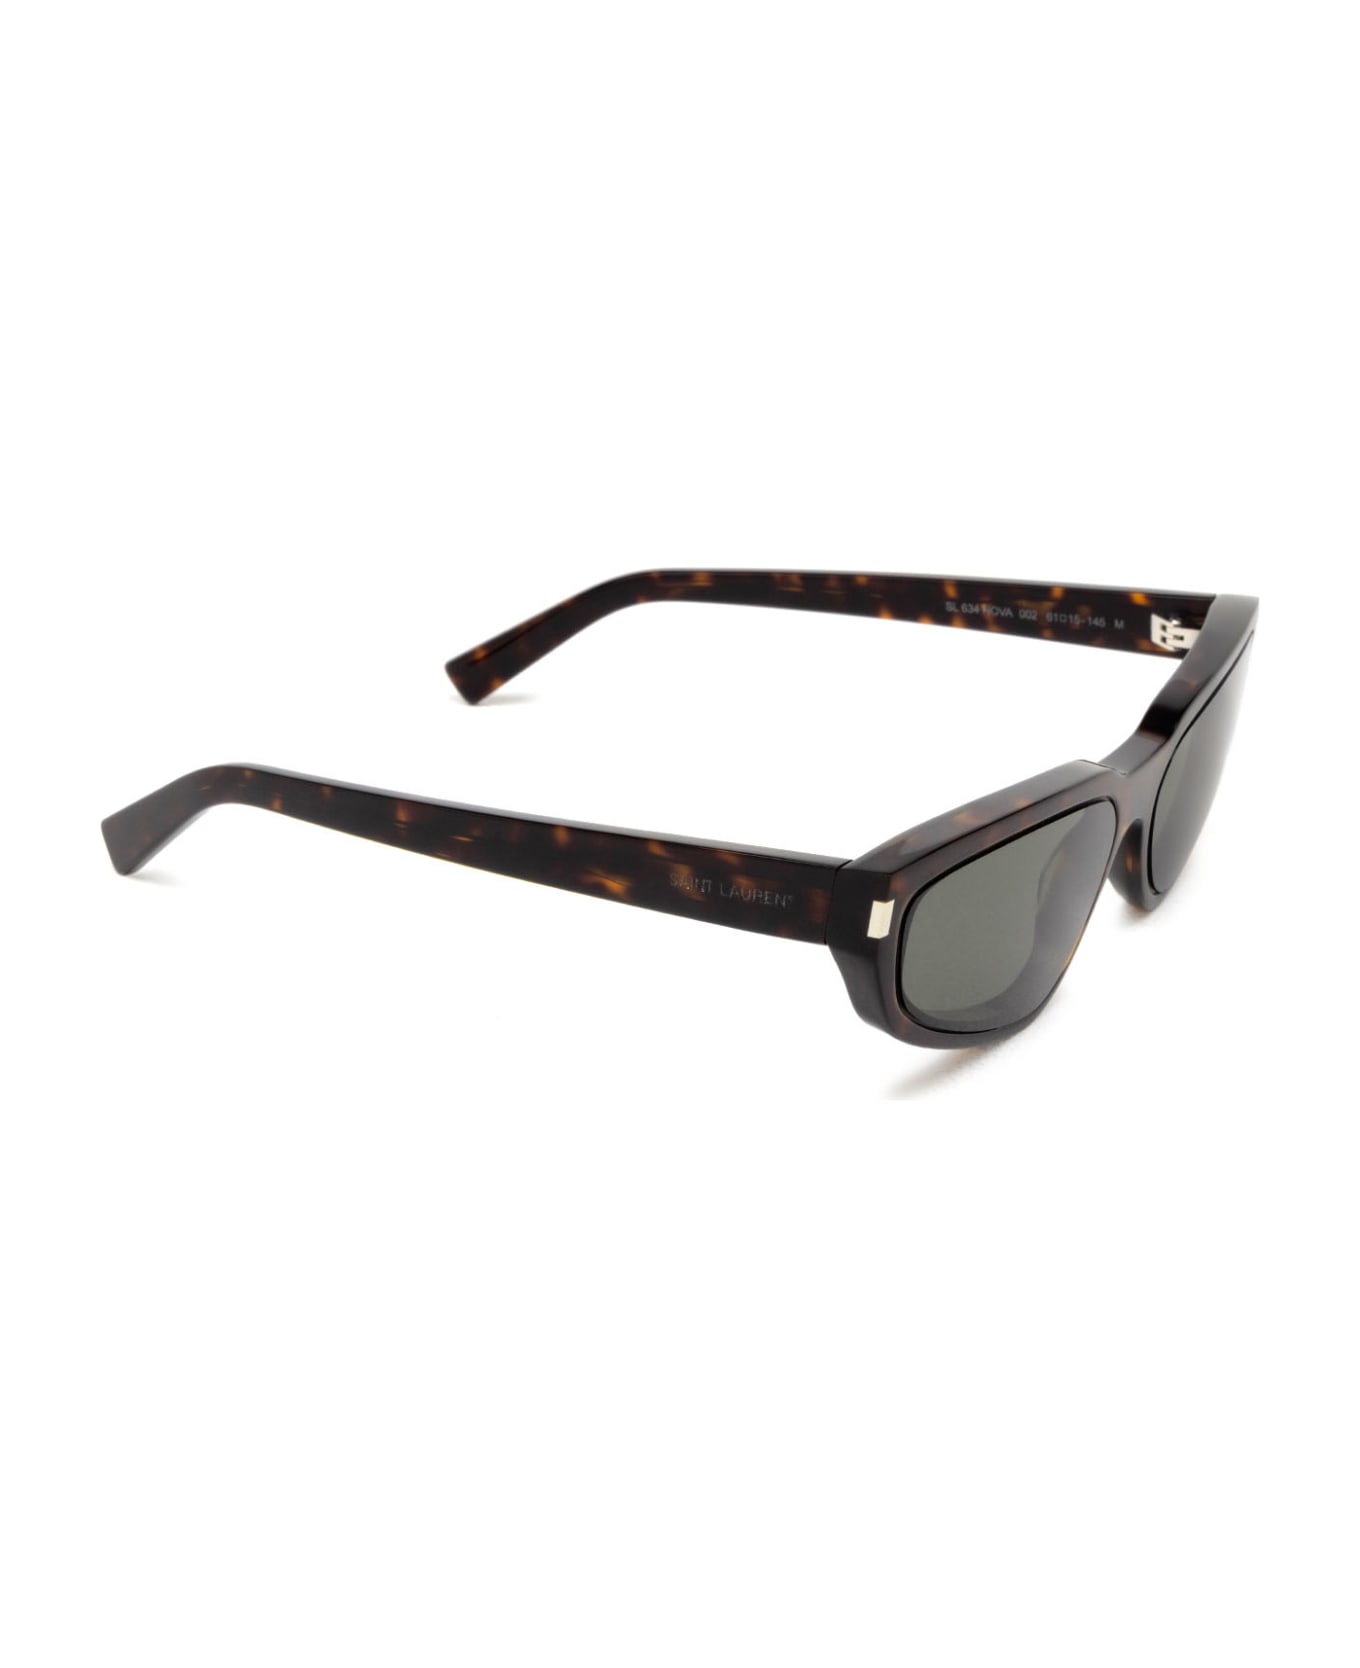 Saint Laurent Eyewear Sl 634 Havana Sunglasses - Havana